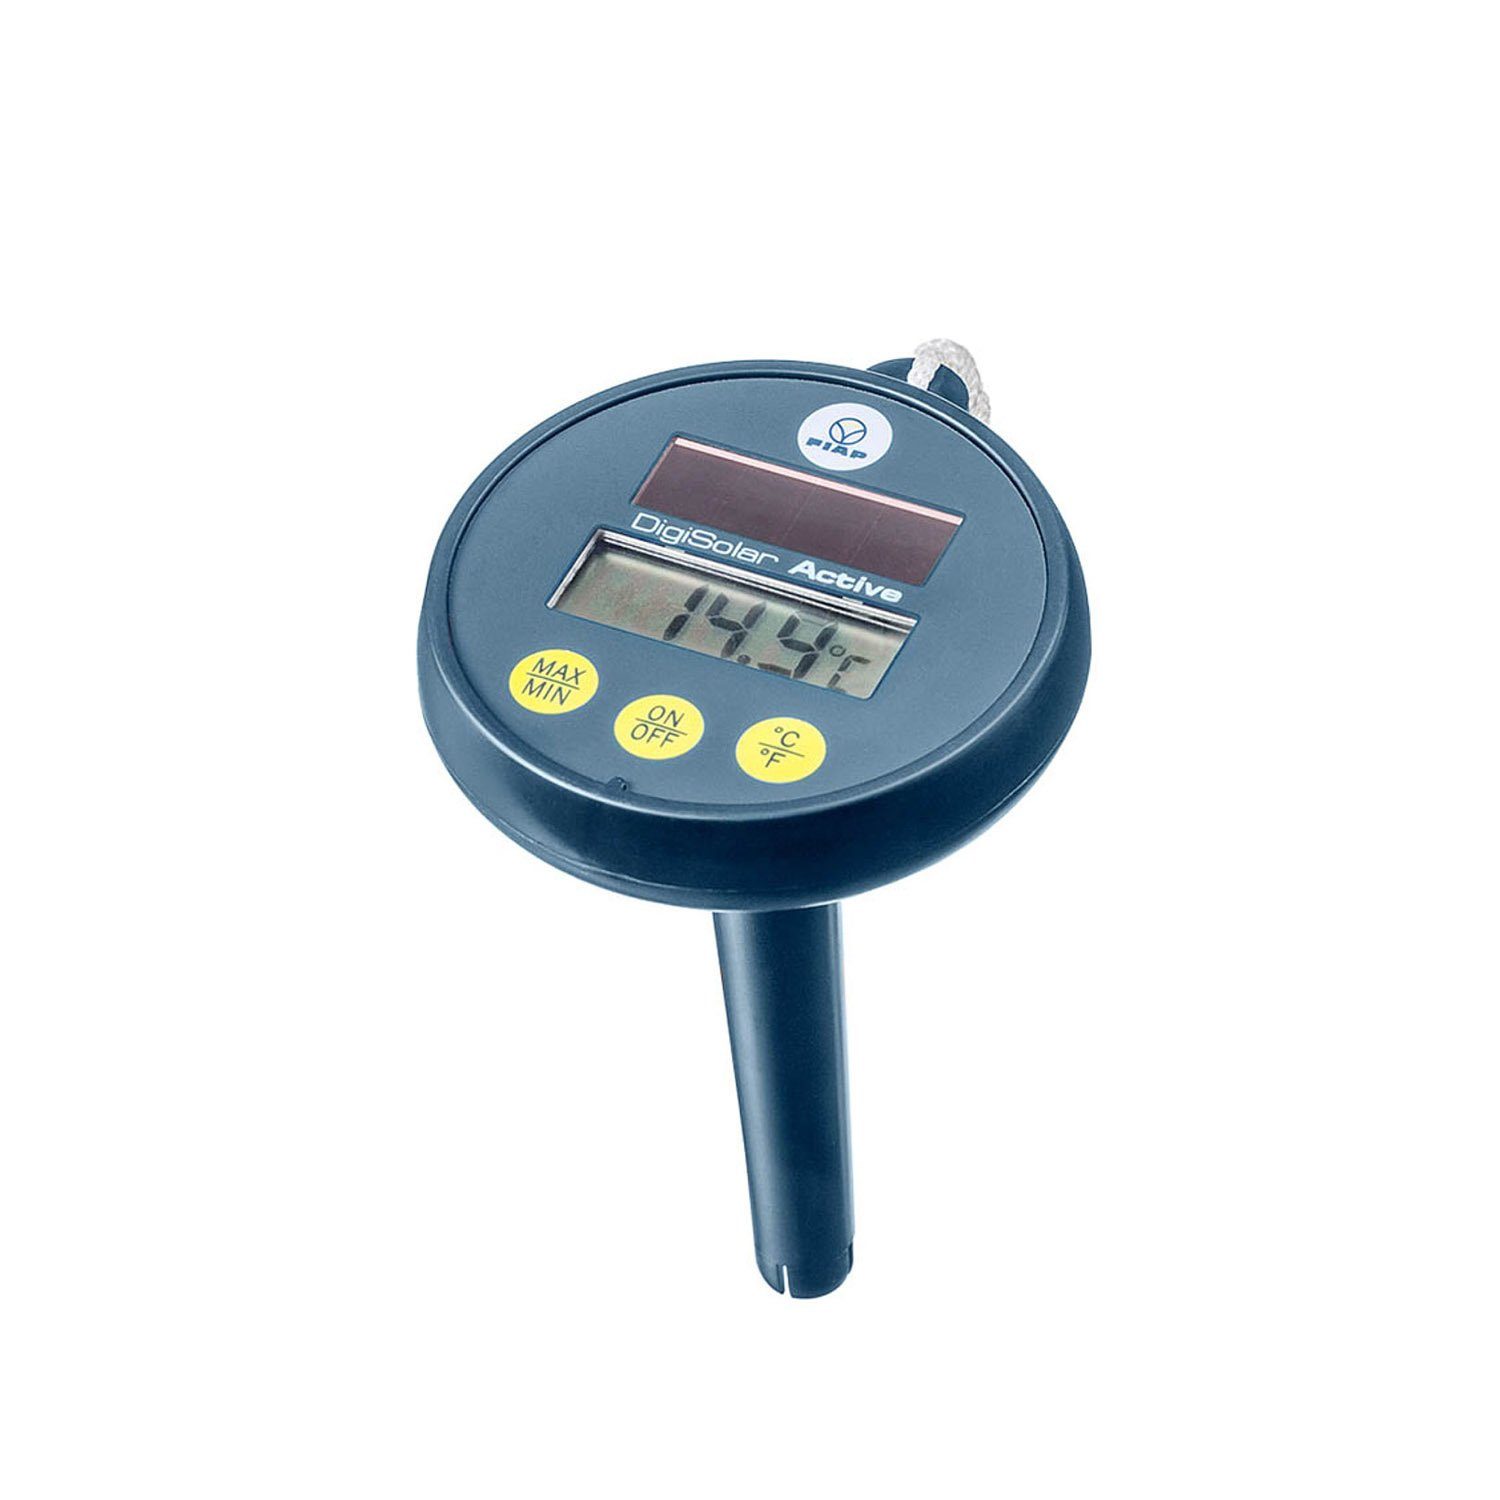 FIAP GmbH Schwimmthermometer FIAP DigiSolarACTIVE - Thermometer - Solarbetrieb, Packung 1-tlg., Digitales Garten-, Schwimmteich- und Poolthermometer, Wassertemperaturmessung in 100 mm Tiefe -20 °C bis +50 °C